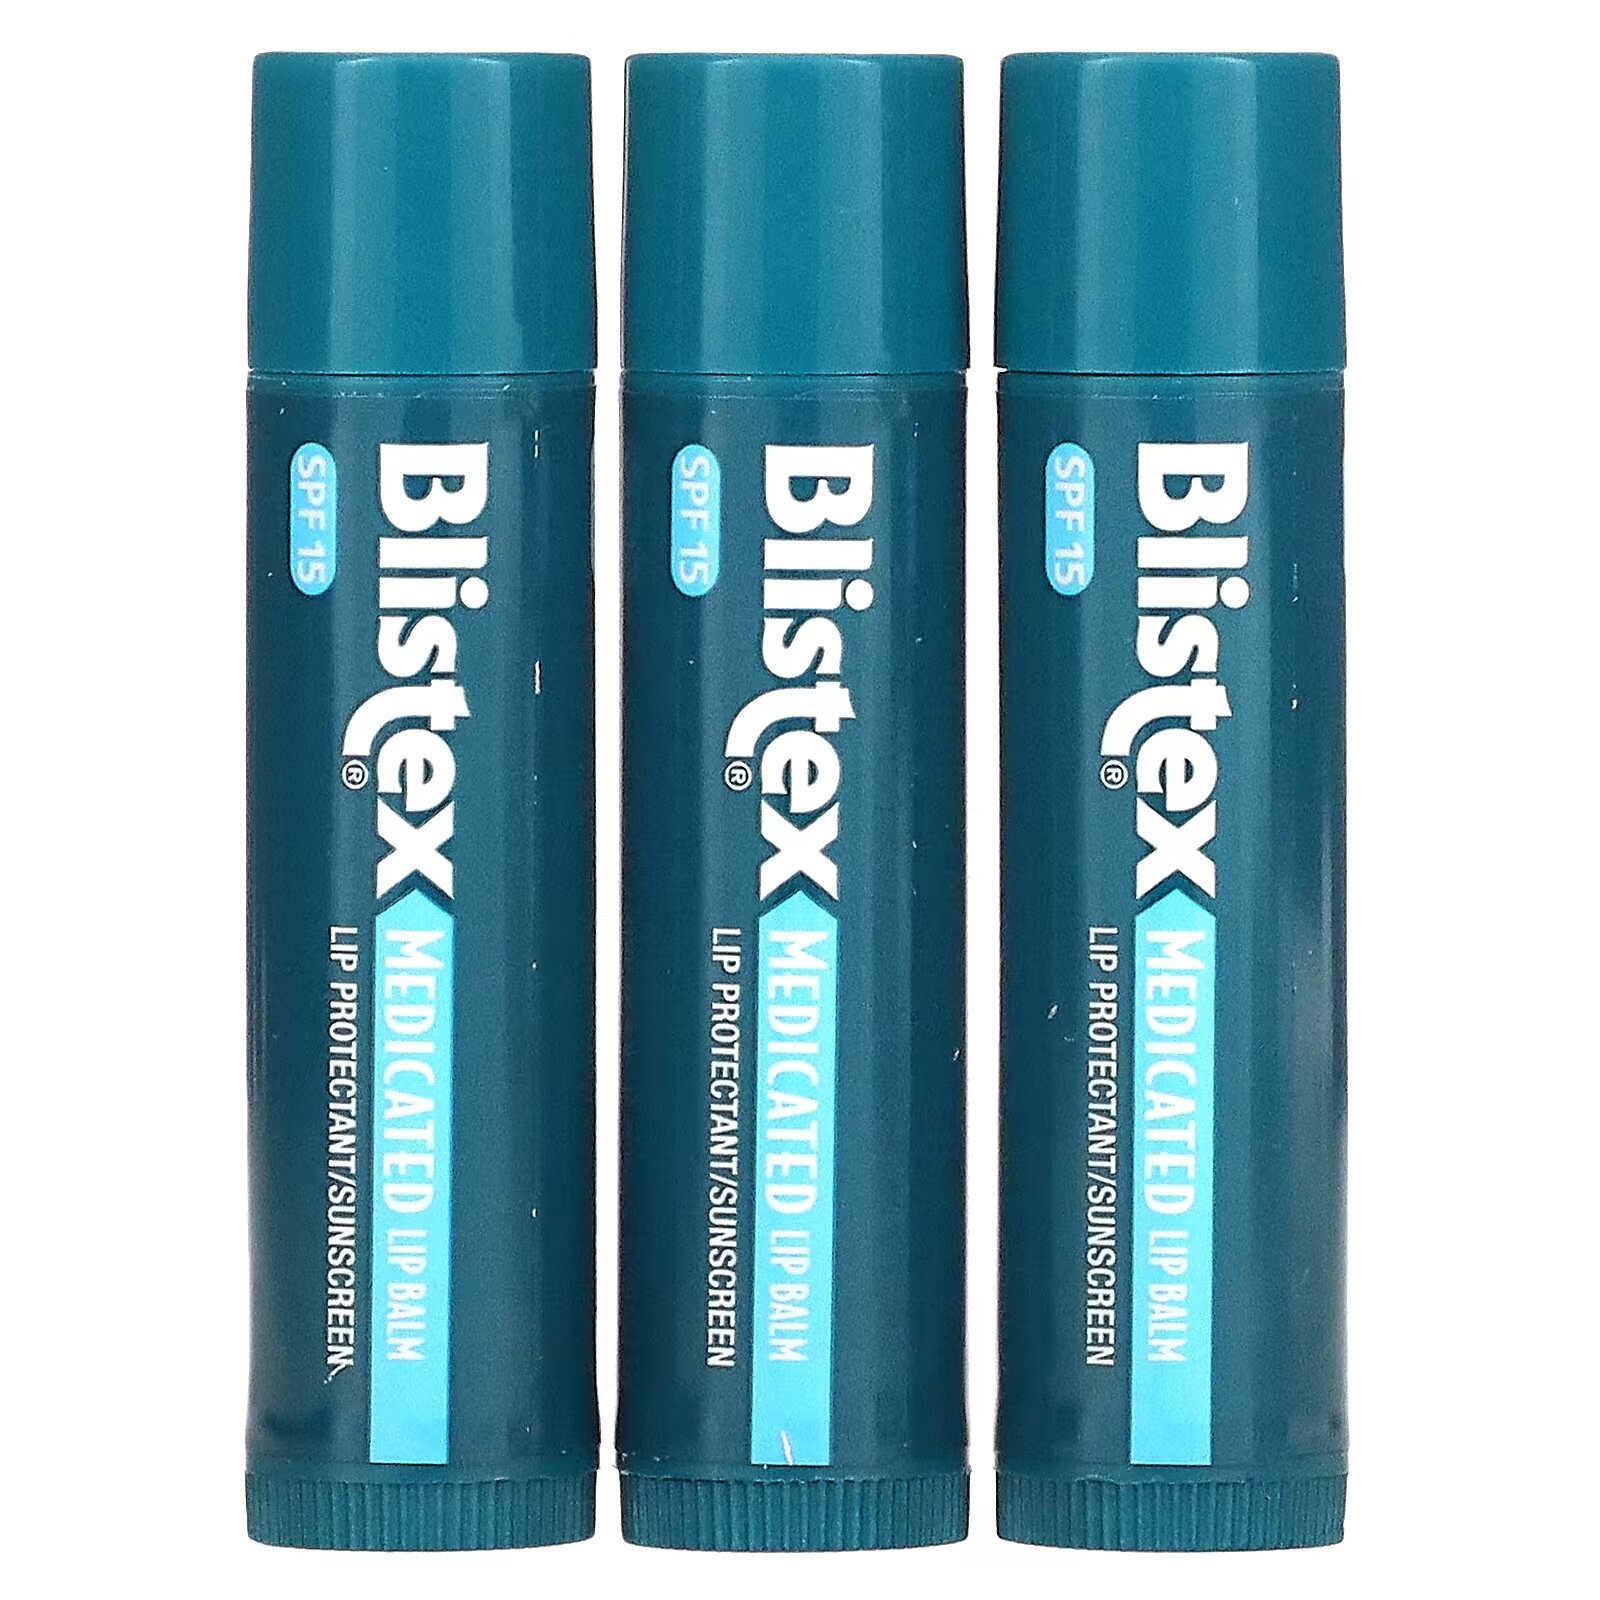 Заживляющий бальзам для губ Blistex с солнцезащитным фильтром SPF 15, в упаковке 3 бальзама по 4,25 г